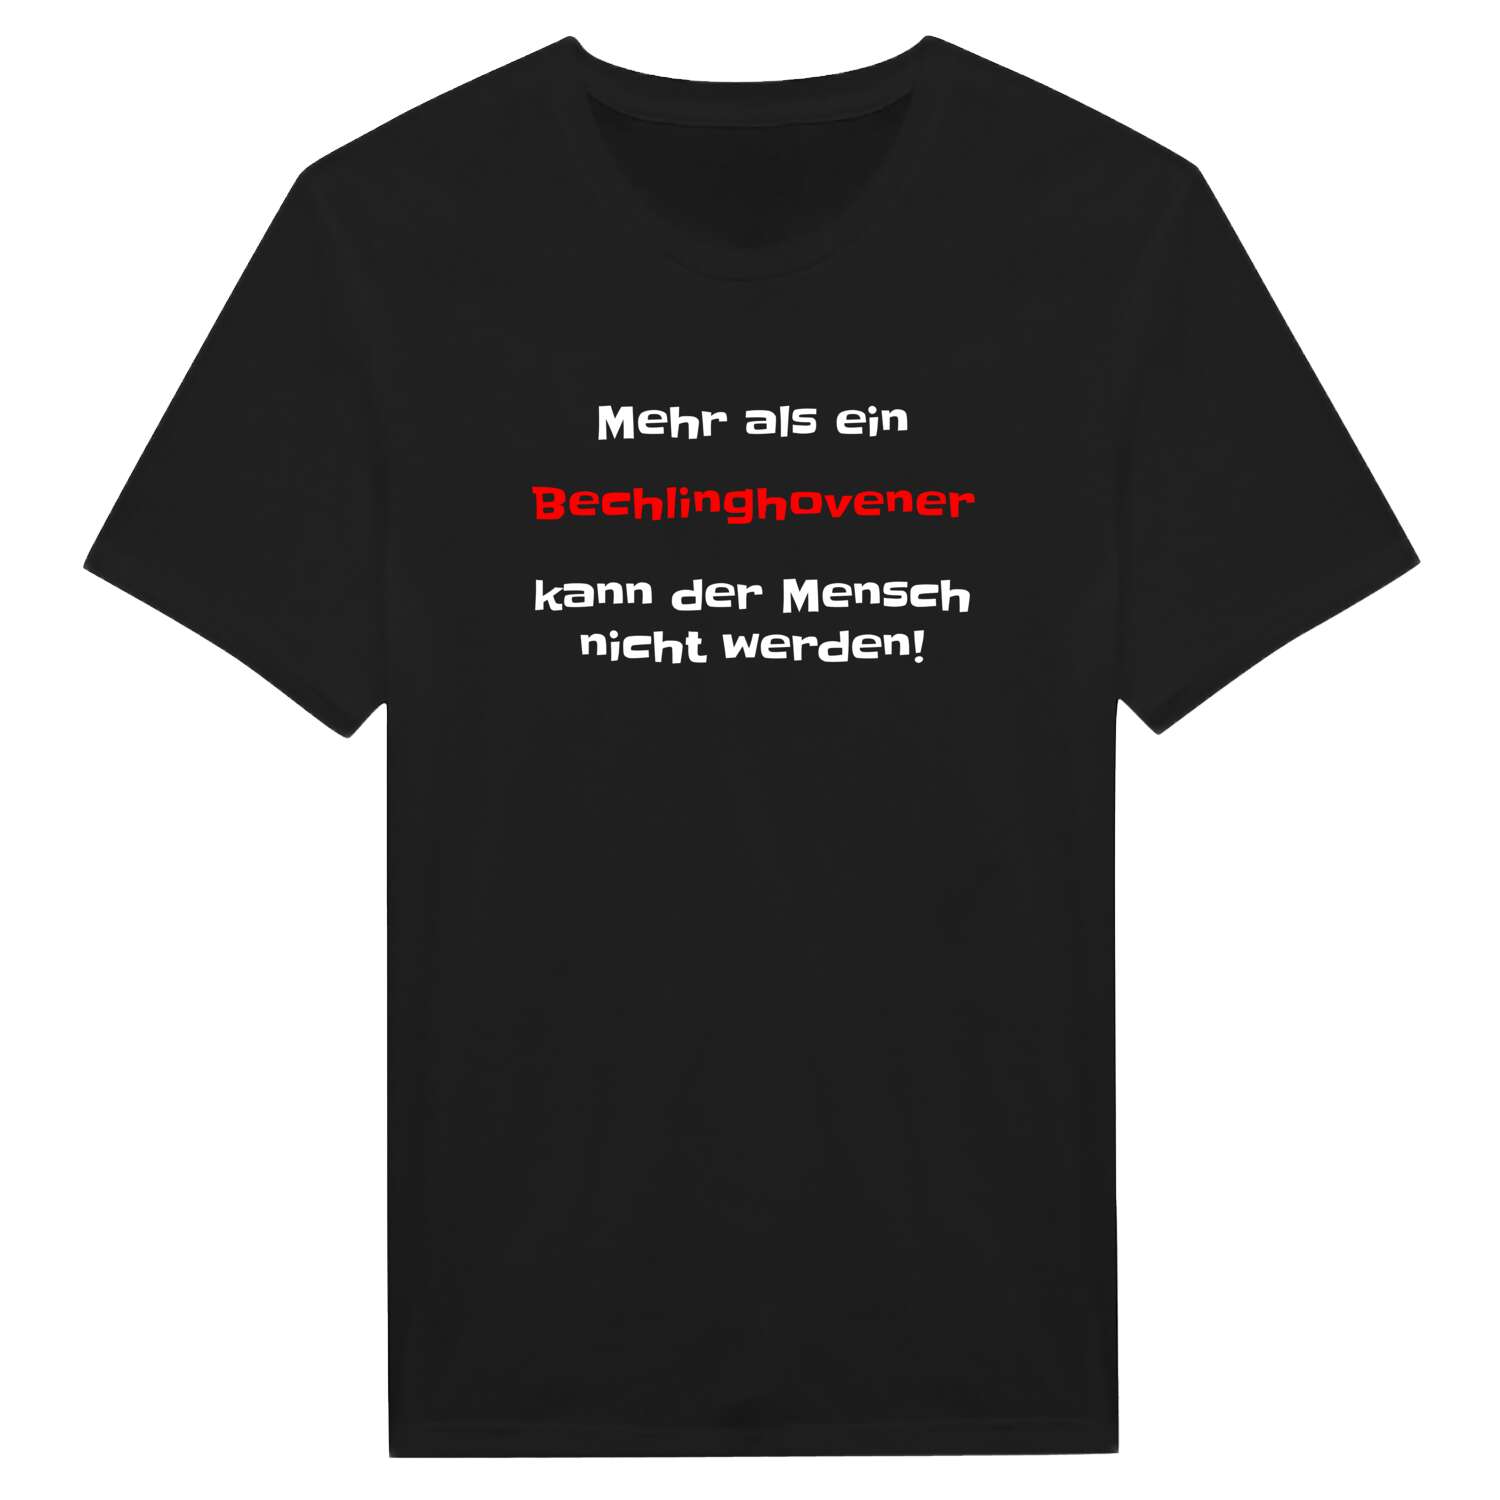 Bechlinghoven T-Shirt »Mehr als ein«